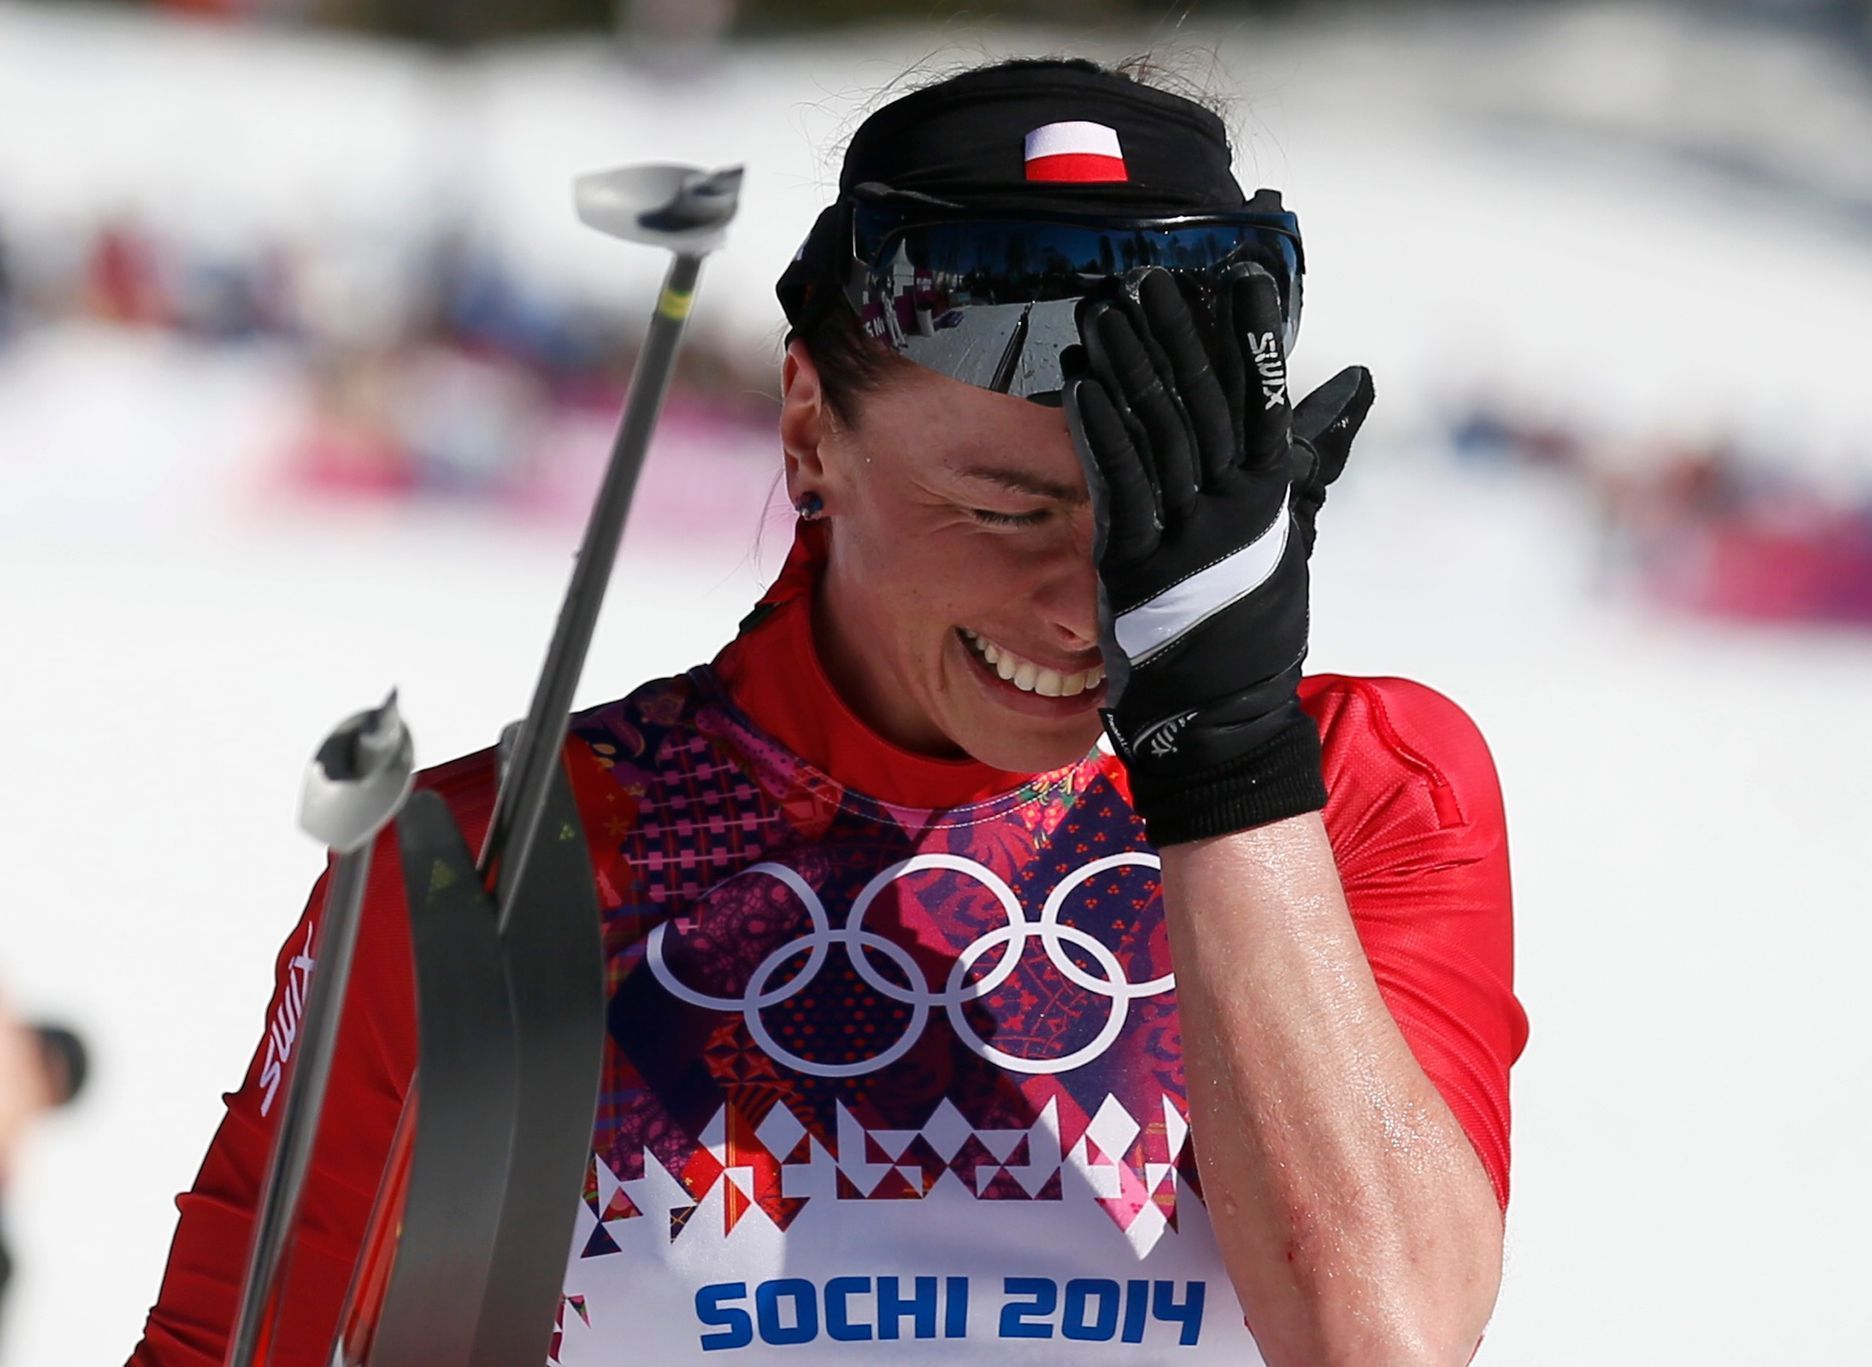 Soči 2014, běh na lyžích 10 km: Justyna Kowalczyková slaví vítězství